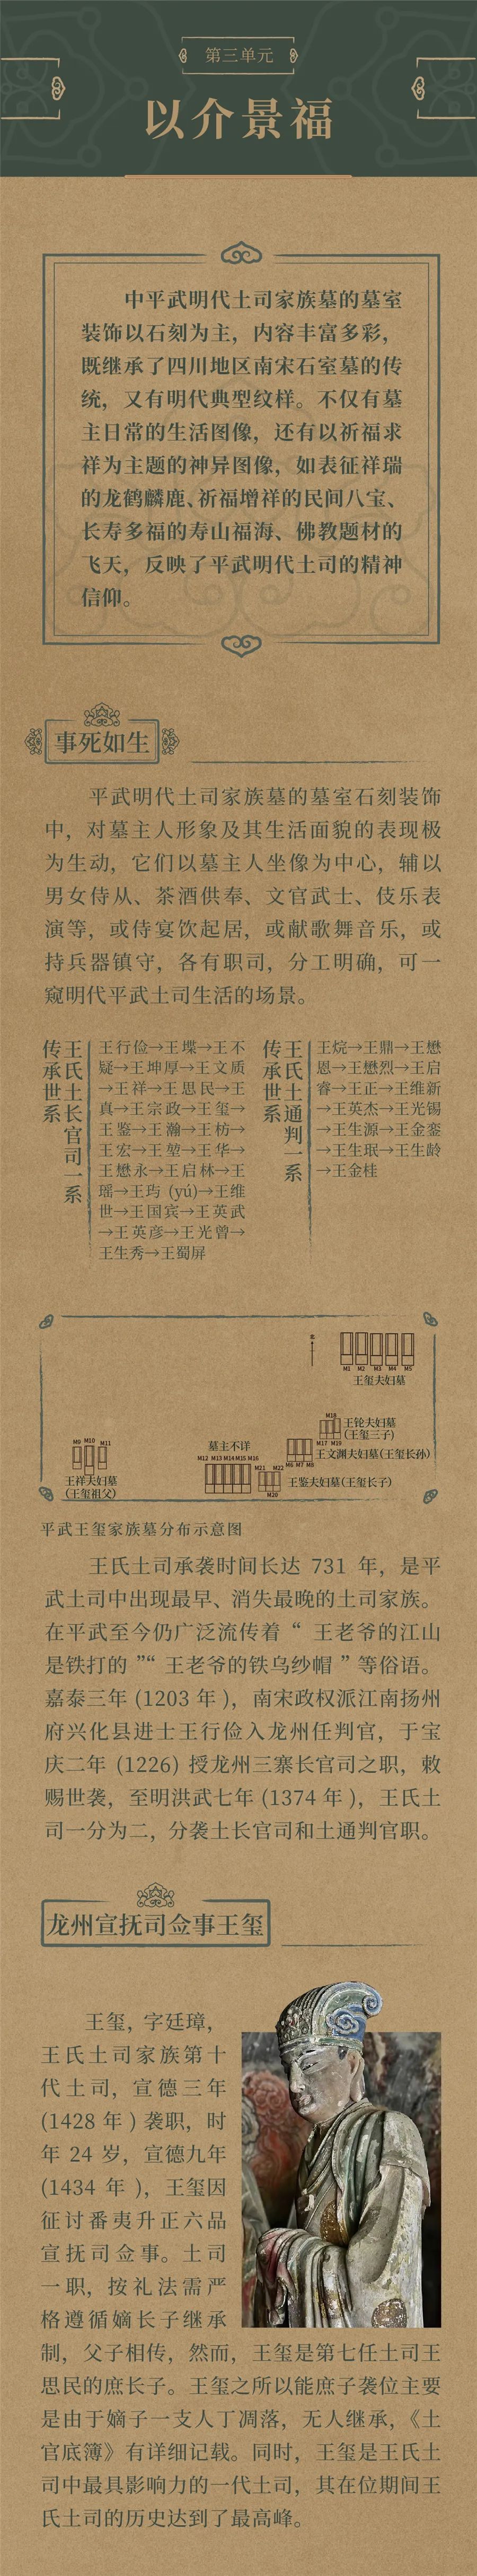 线上展览：《土司遗珍——四川平武明代土司家族墓出土文物精品展》第三期